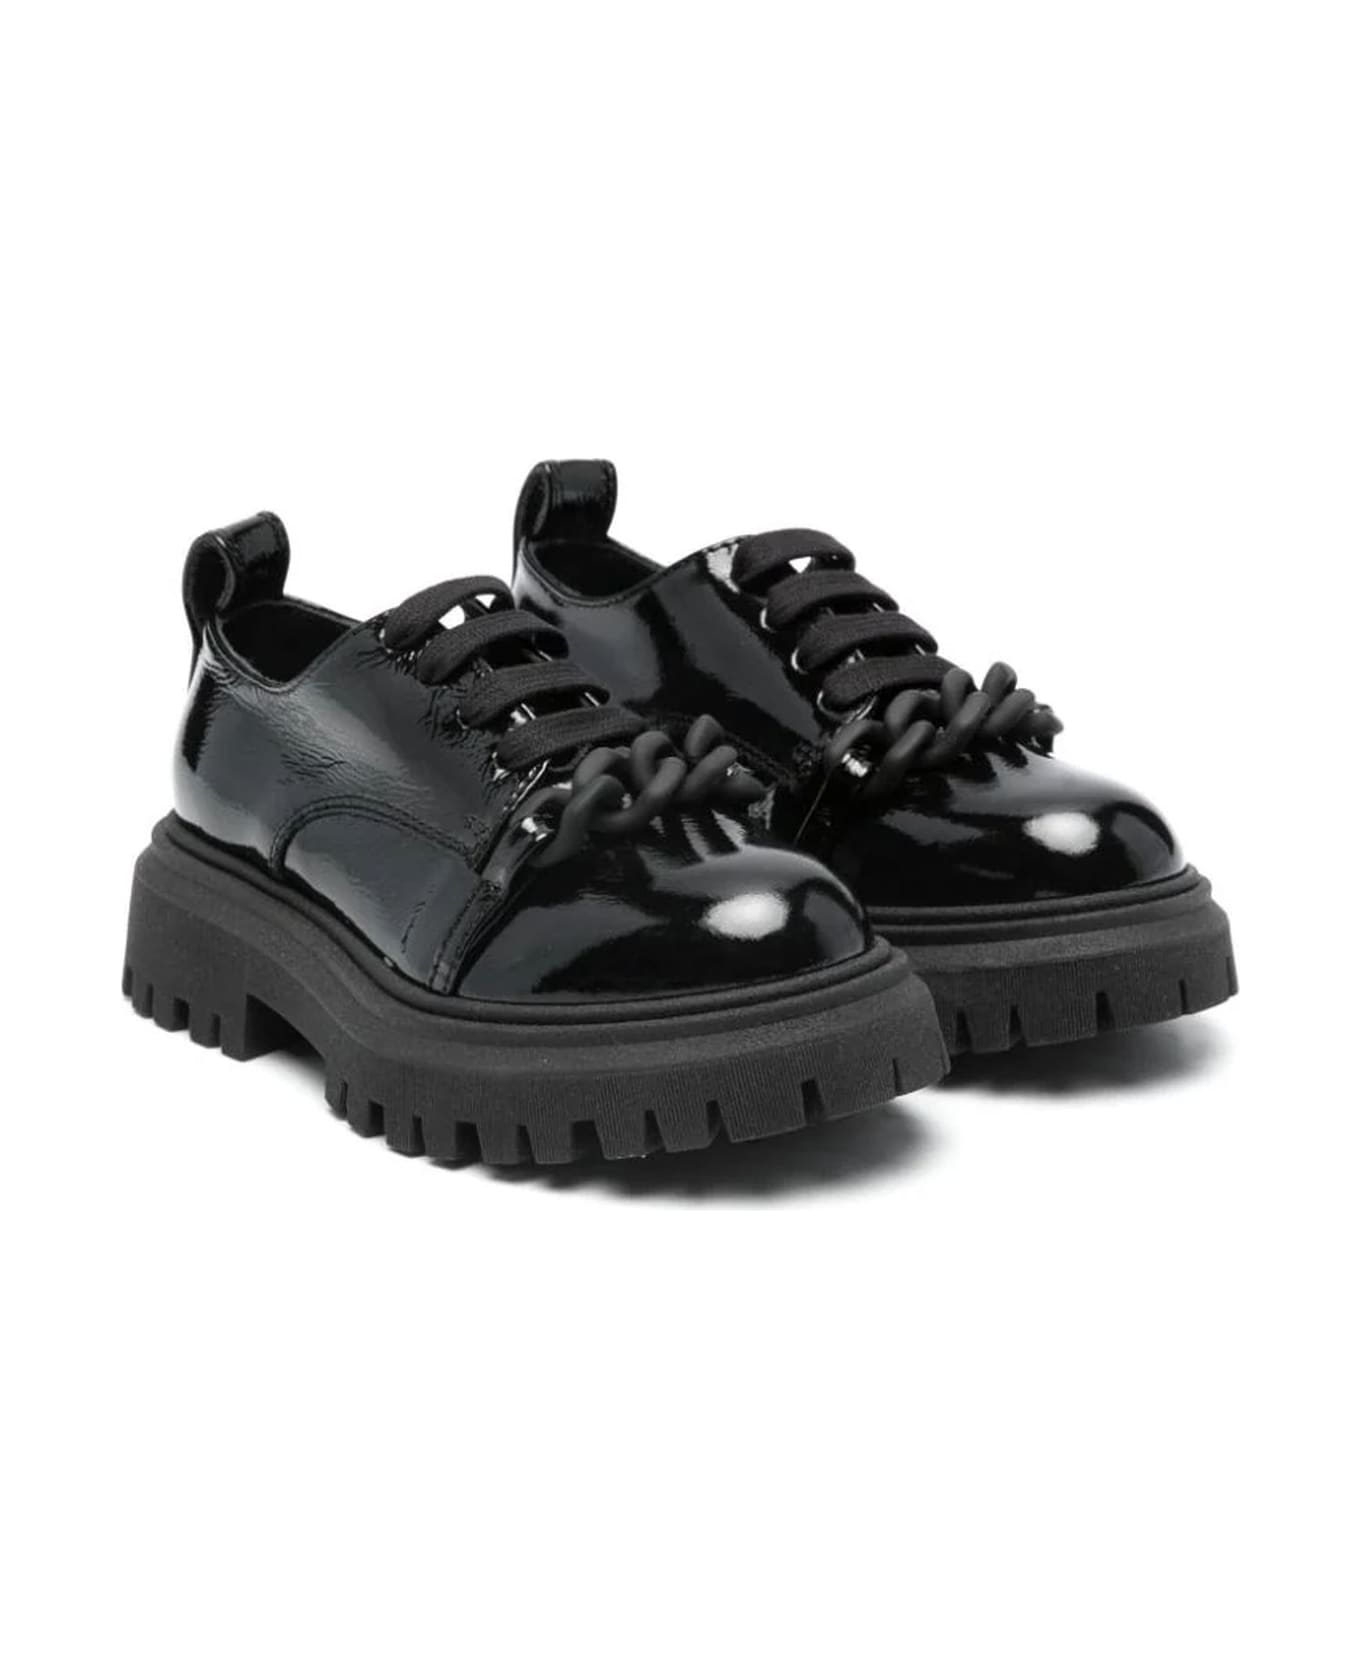 N.21 N°21 Flat Shoes Black - Black